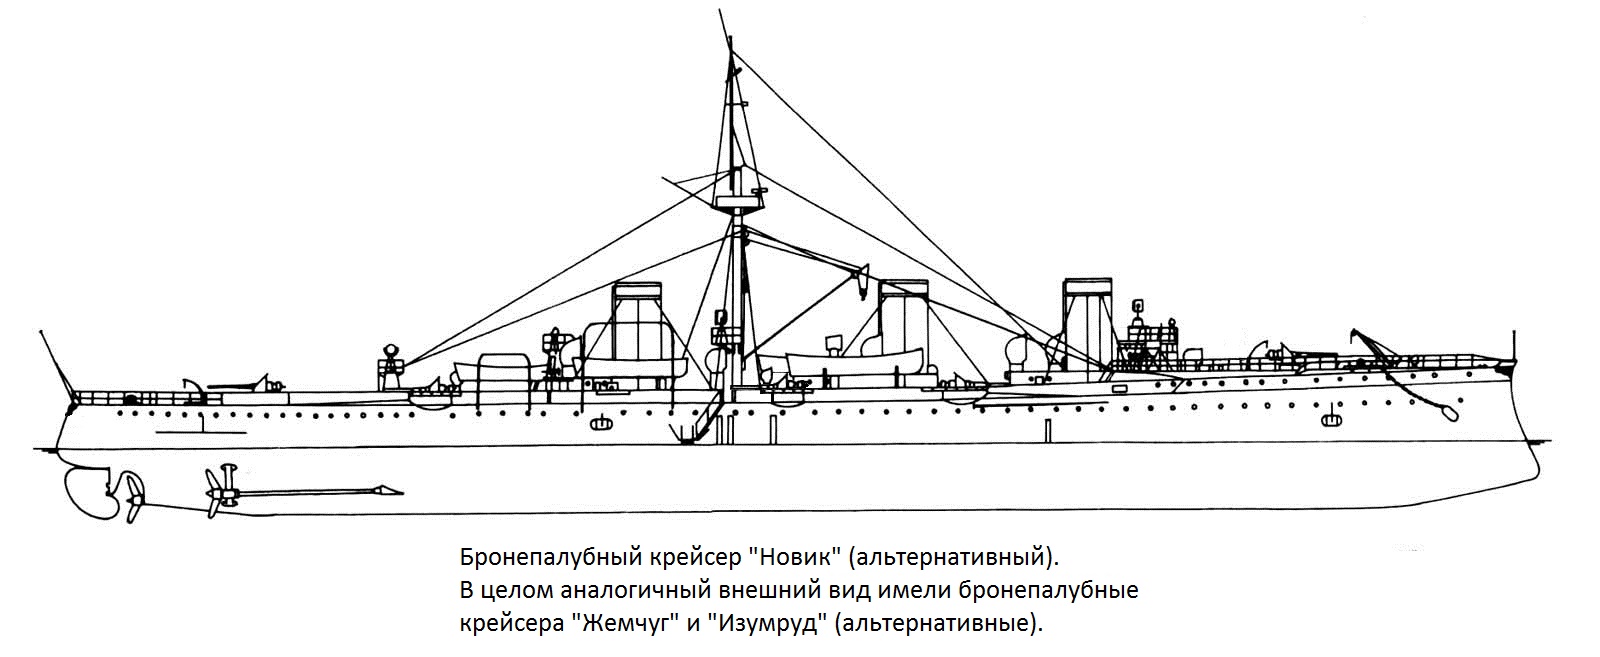 "Экономный" флот для Российской Империи